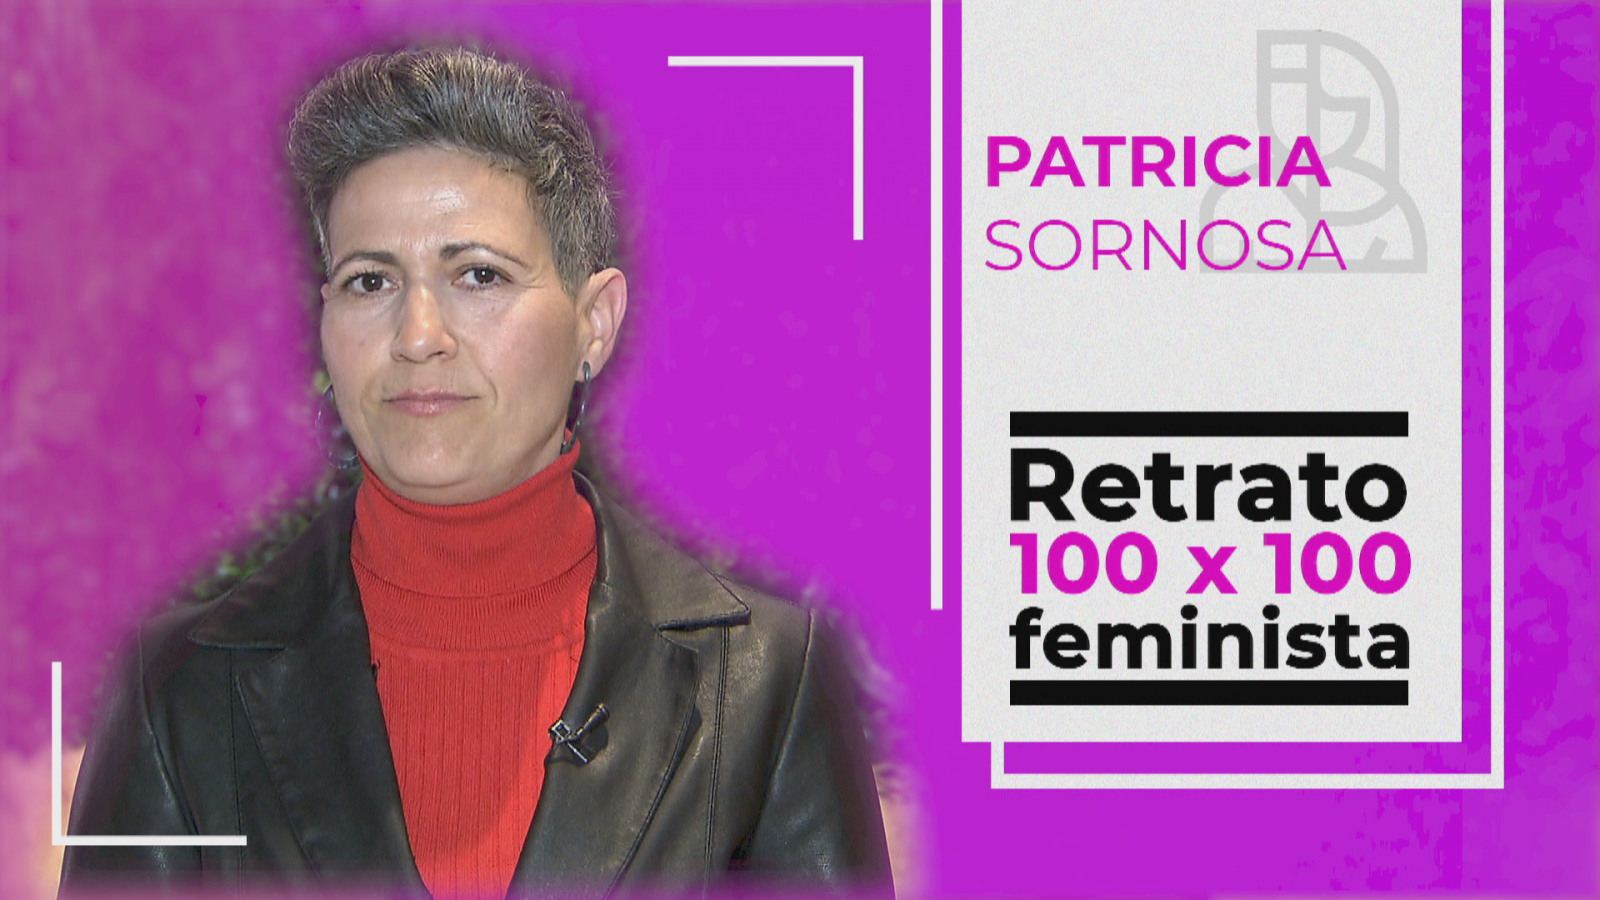 Retrato 100x100 feminista: Patricia Sornosa